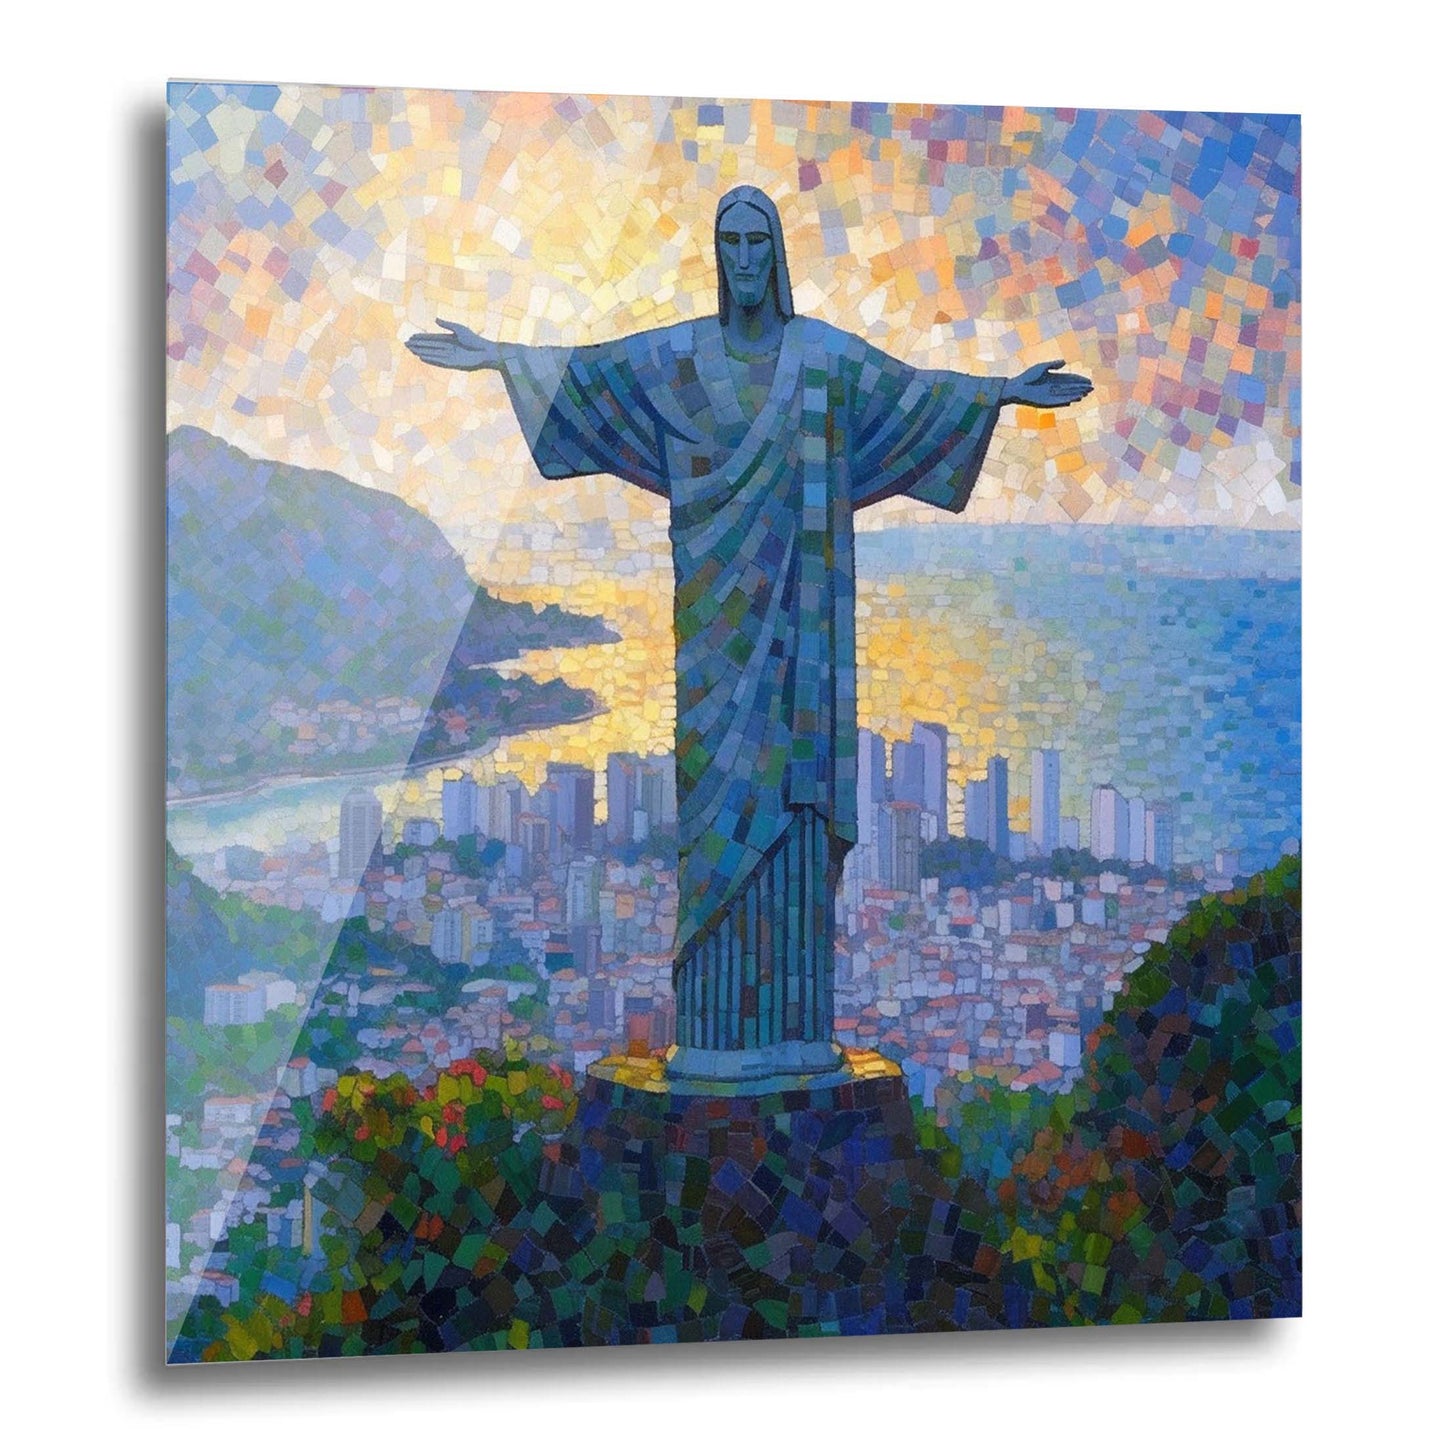 Statue du Christ de Rio de Janeiro - peinture murale dans le style de l'impressionnisme